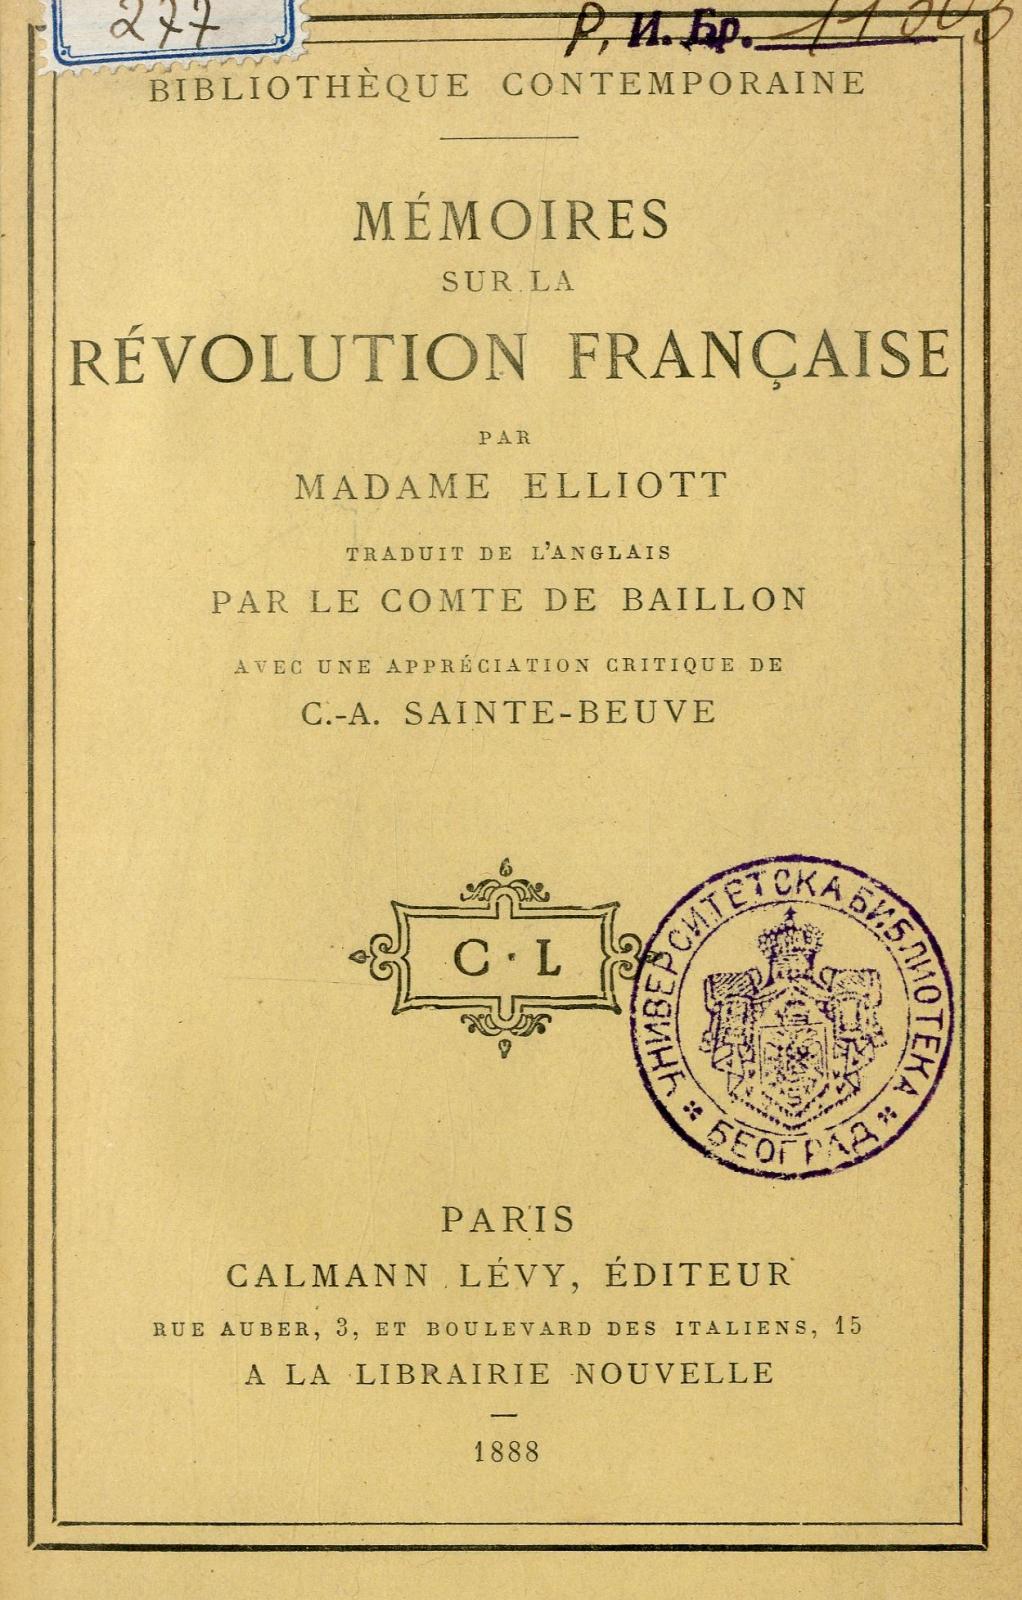 Mémoires sur la Révolution française / par Madame Elliott ; traduits de l'anglais par le comte de Baillon ; avec une appréciation critique de C.-A. Sainte-Beuve